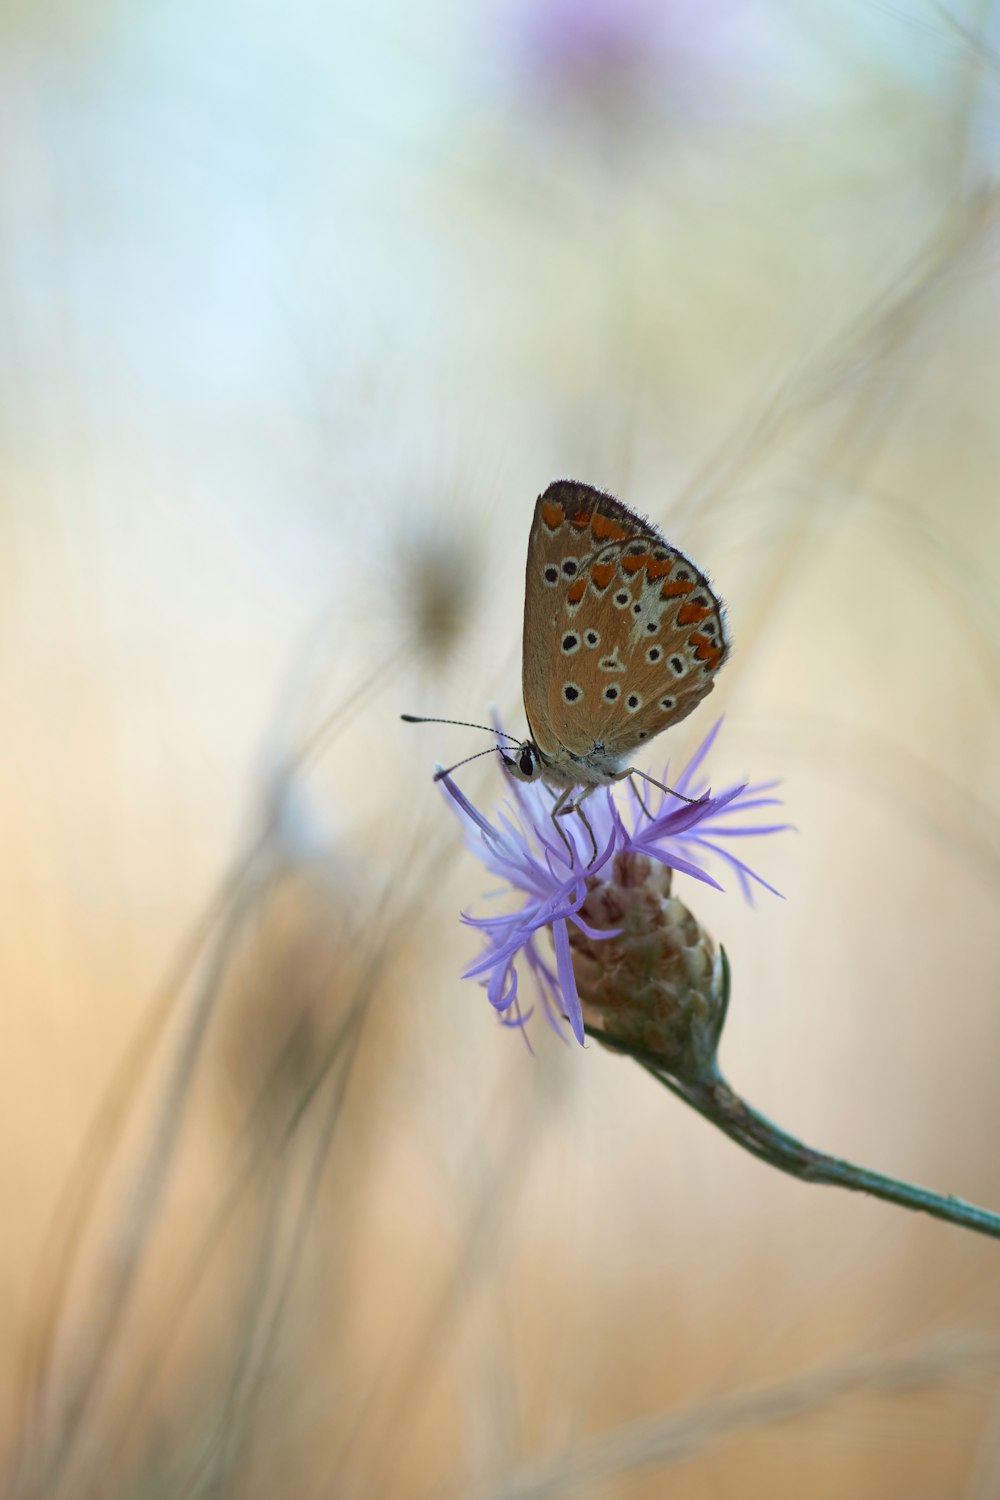 Brauner und weißer Schmetterling sitzt tagsüber auf lila Blume in Nahaufnahme